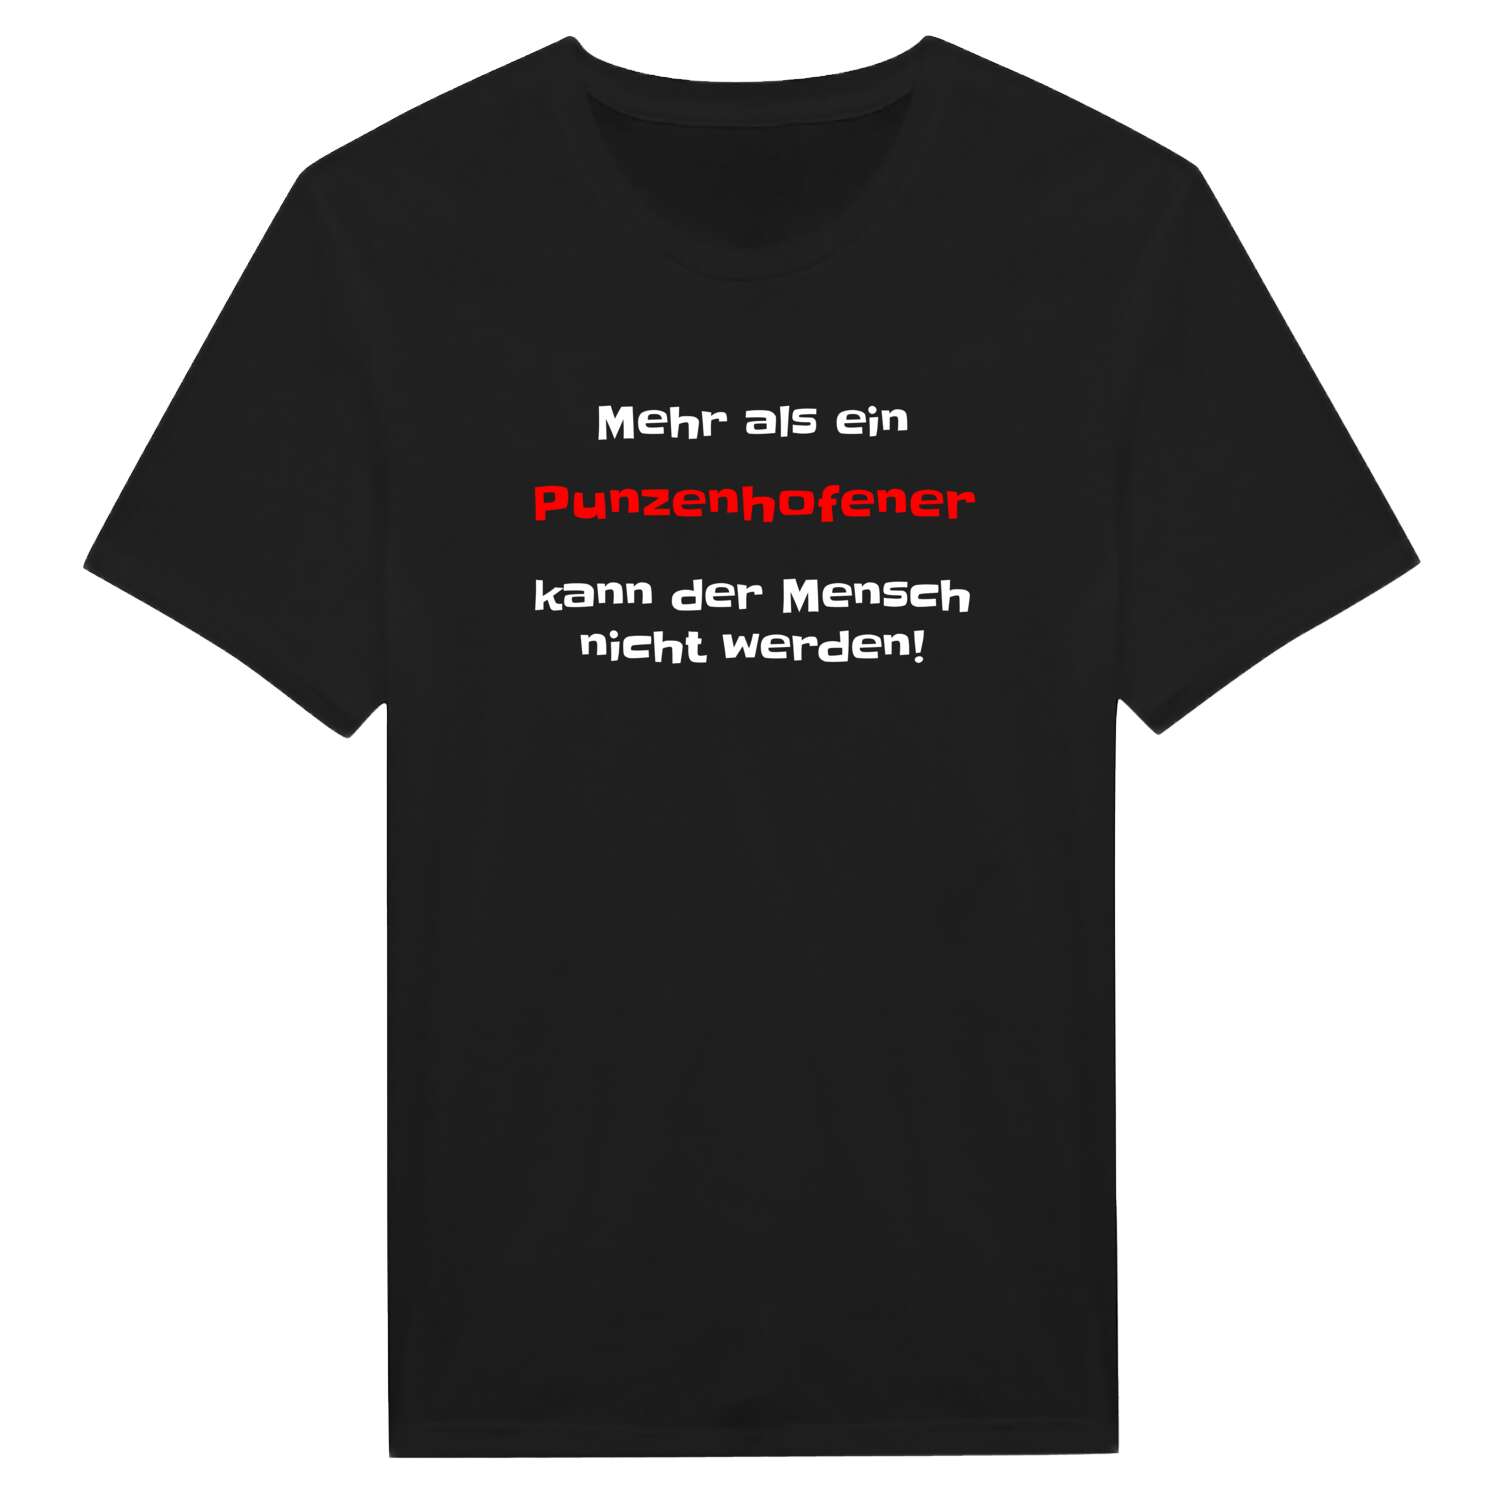 Punzenhofen T-Shirt »Mehr als ein«